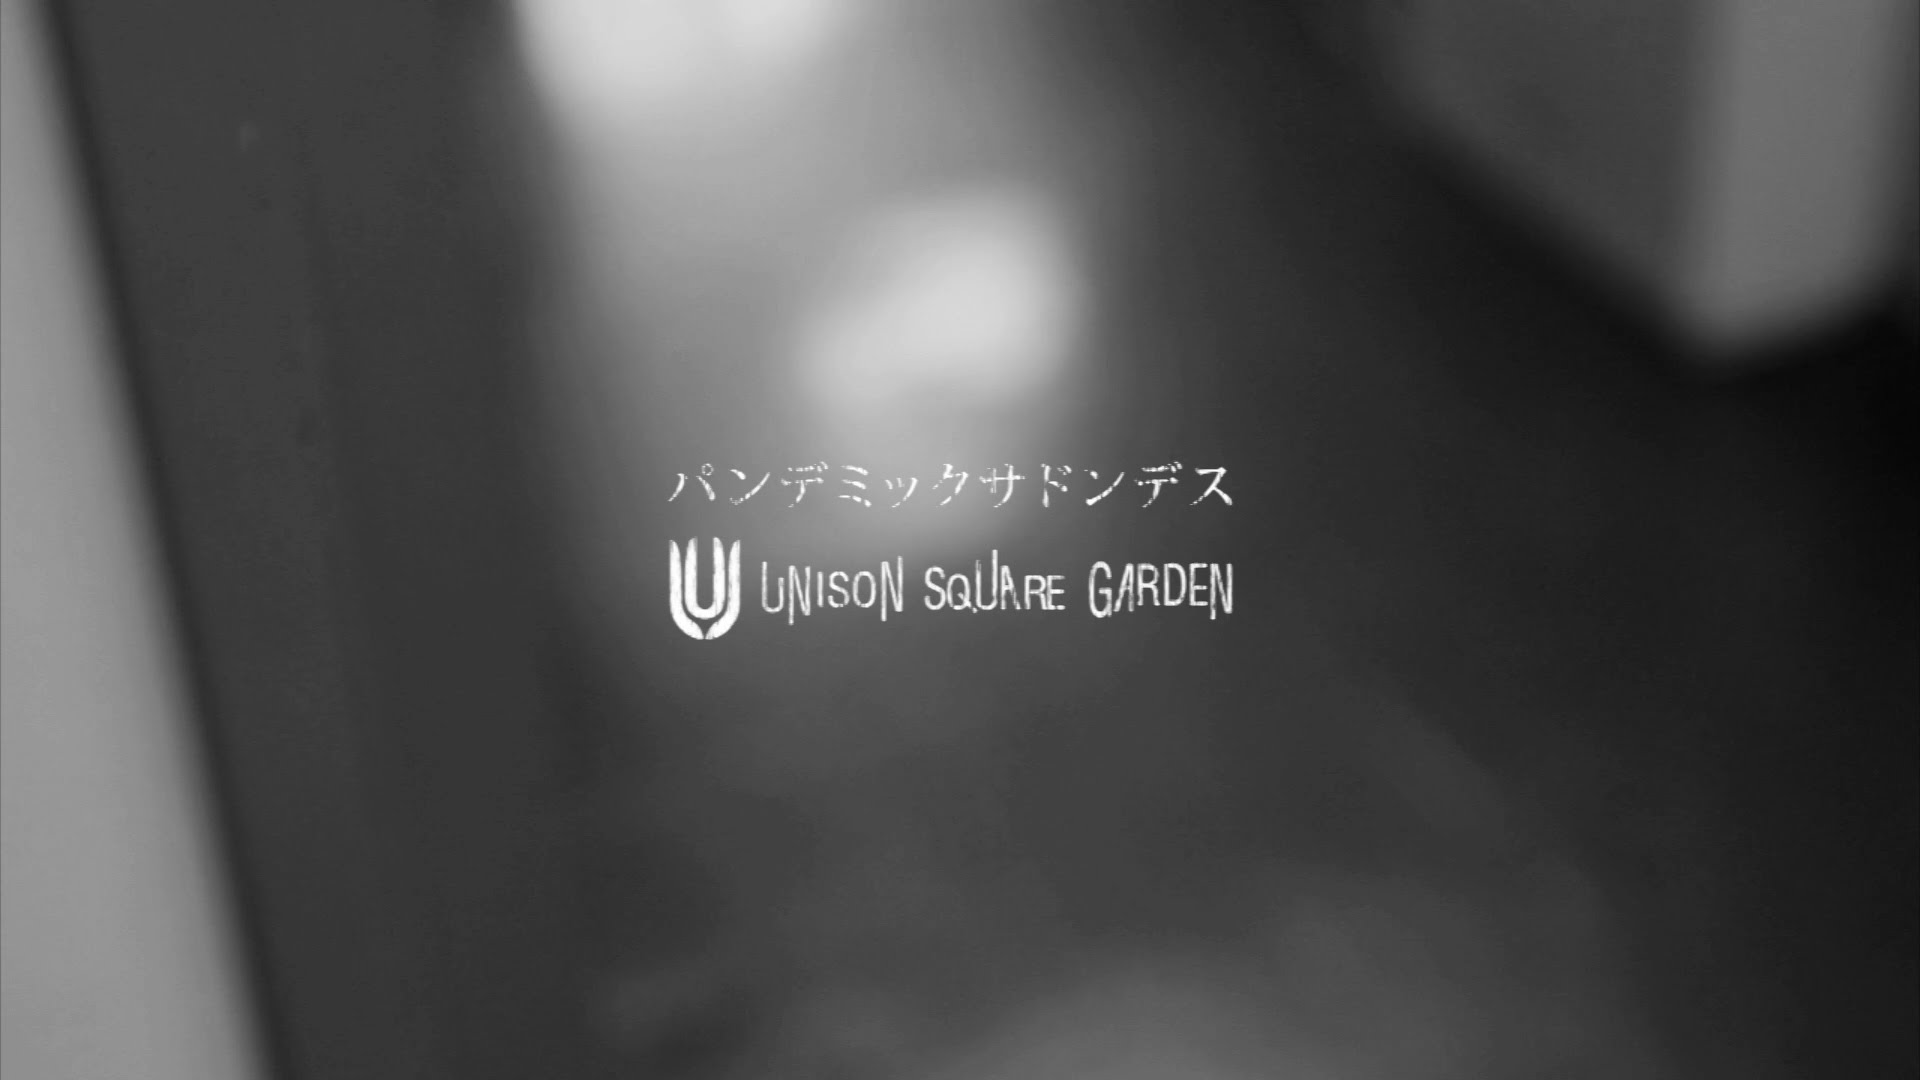 UNISON SQUARE GARDEN「パンデミックサドンデス」ショートVer. - YouTube